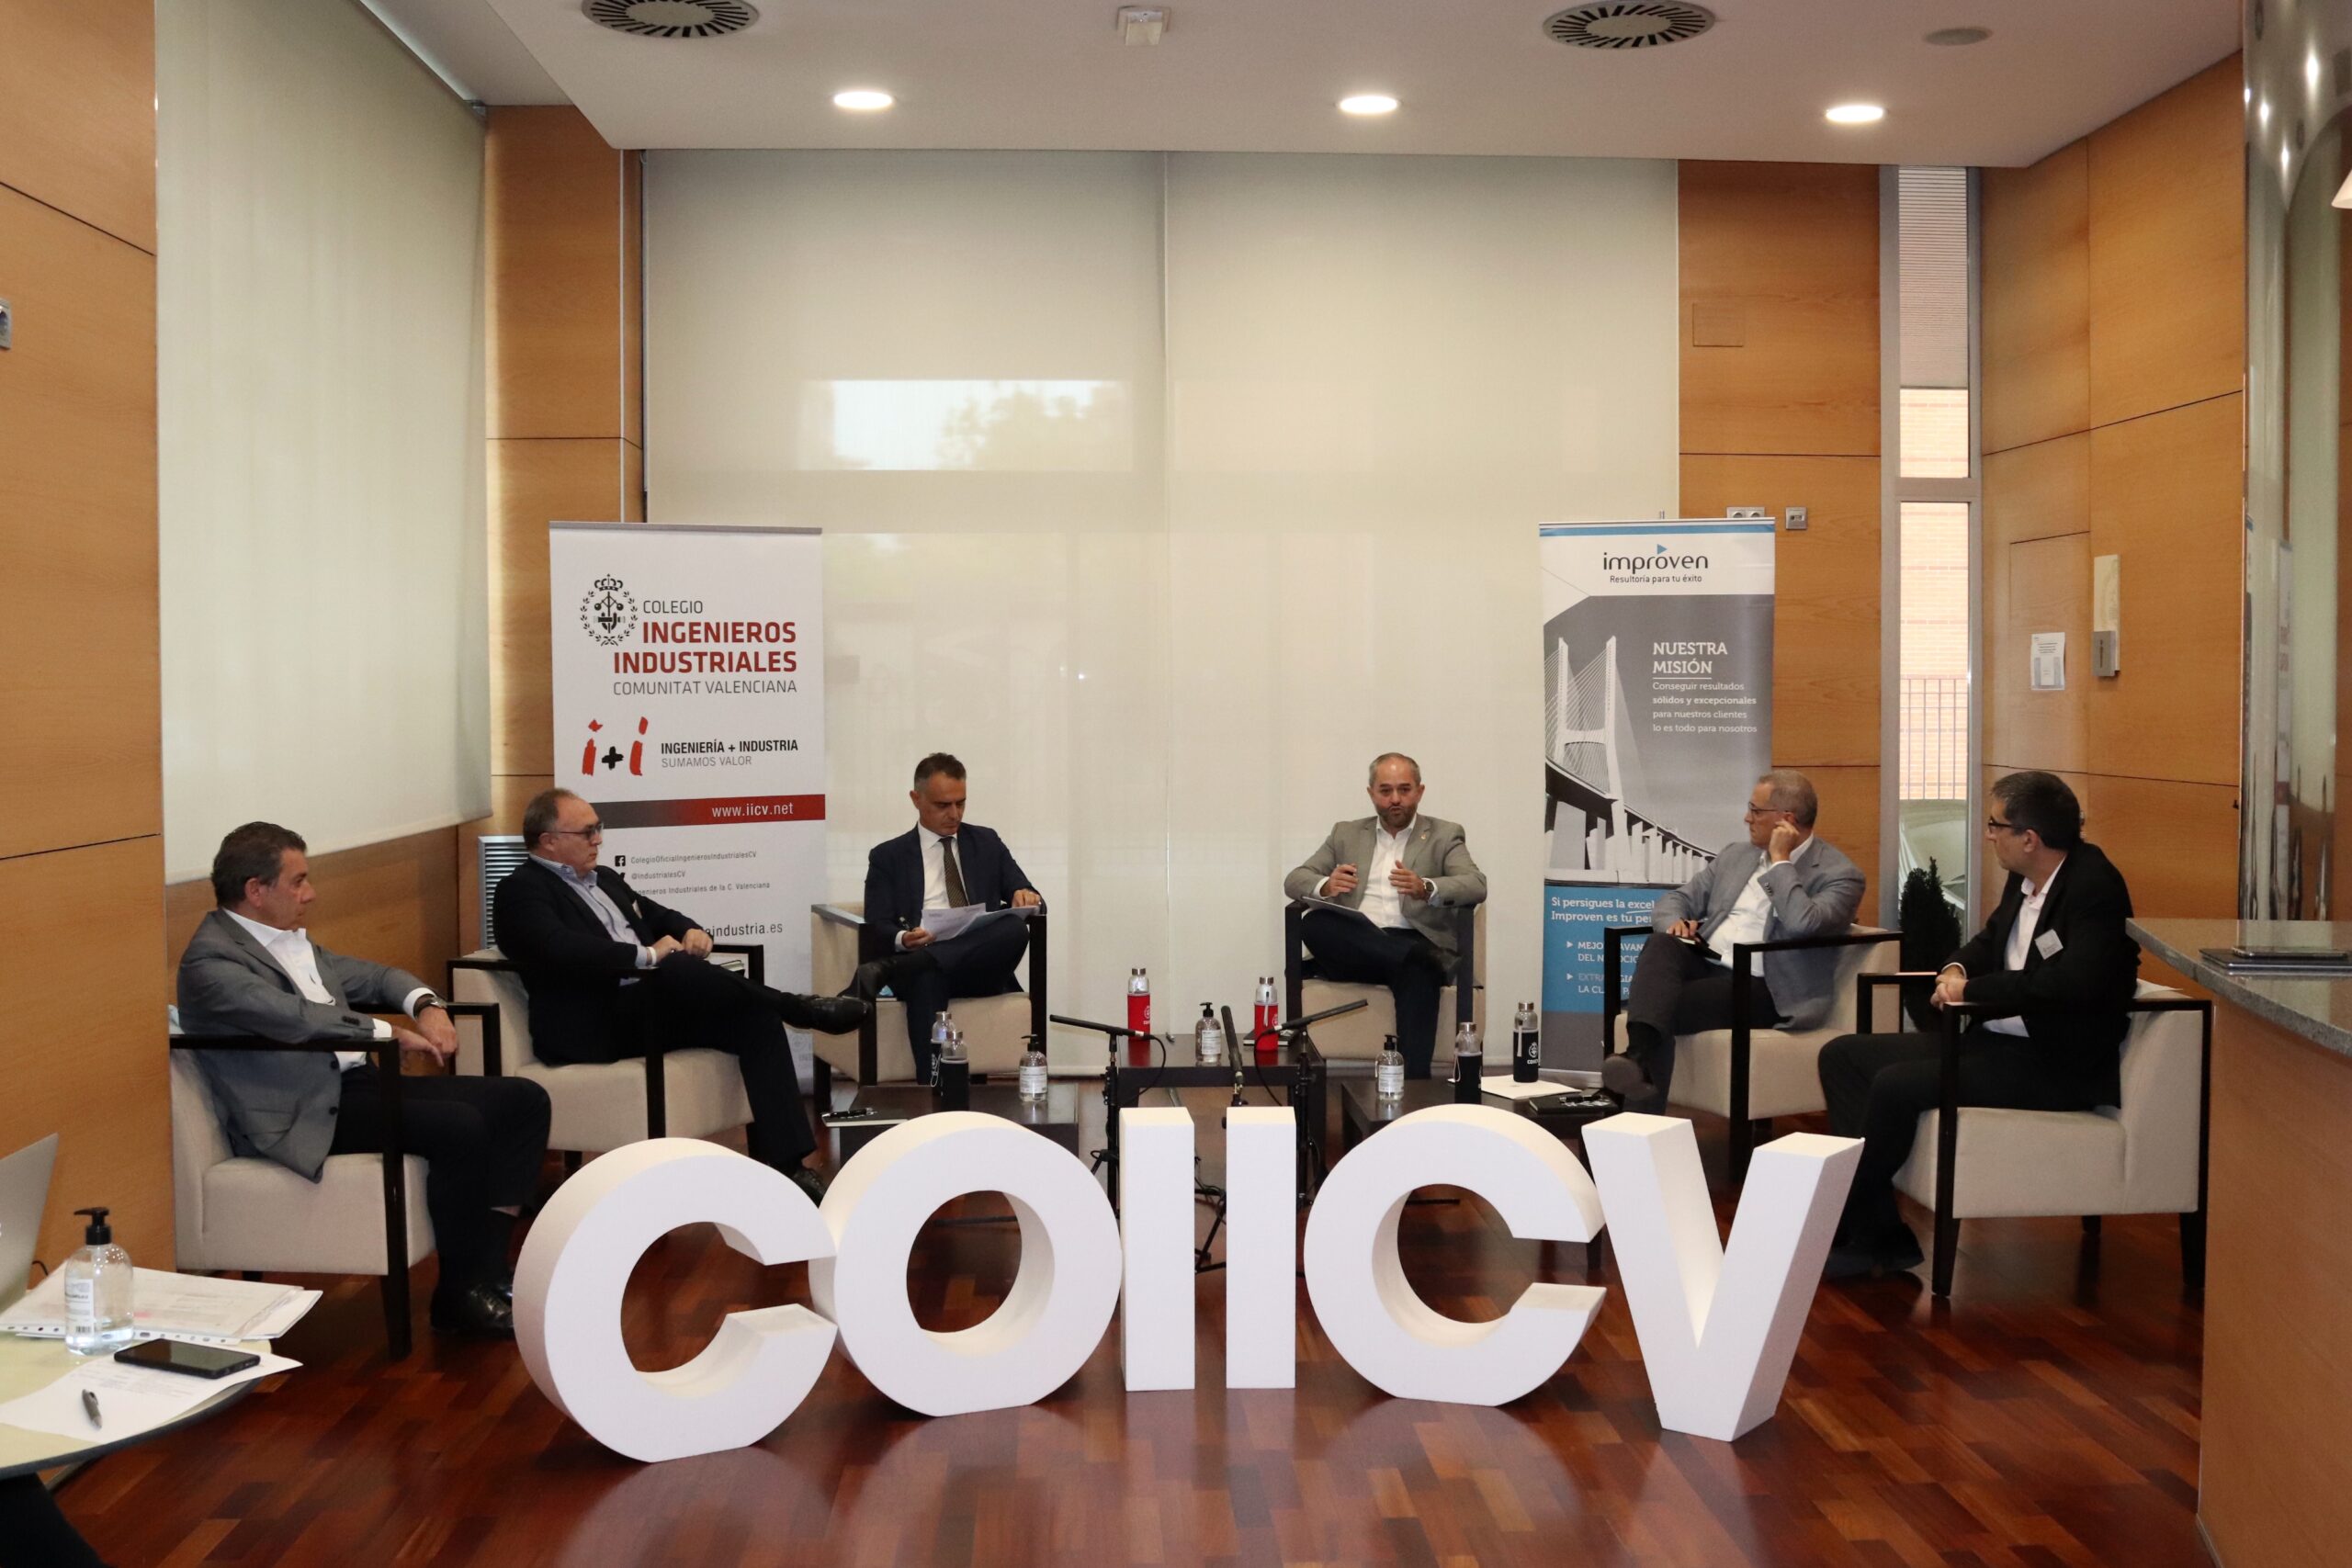 La industria valenciana apuesta por la digitalización y los nuevos talentos